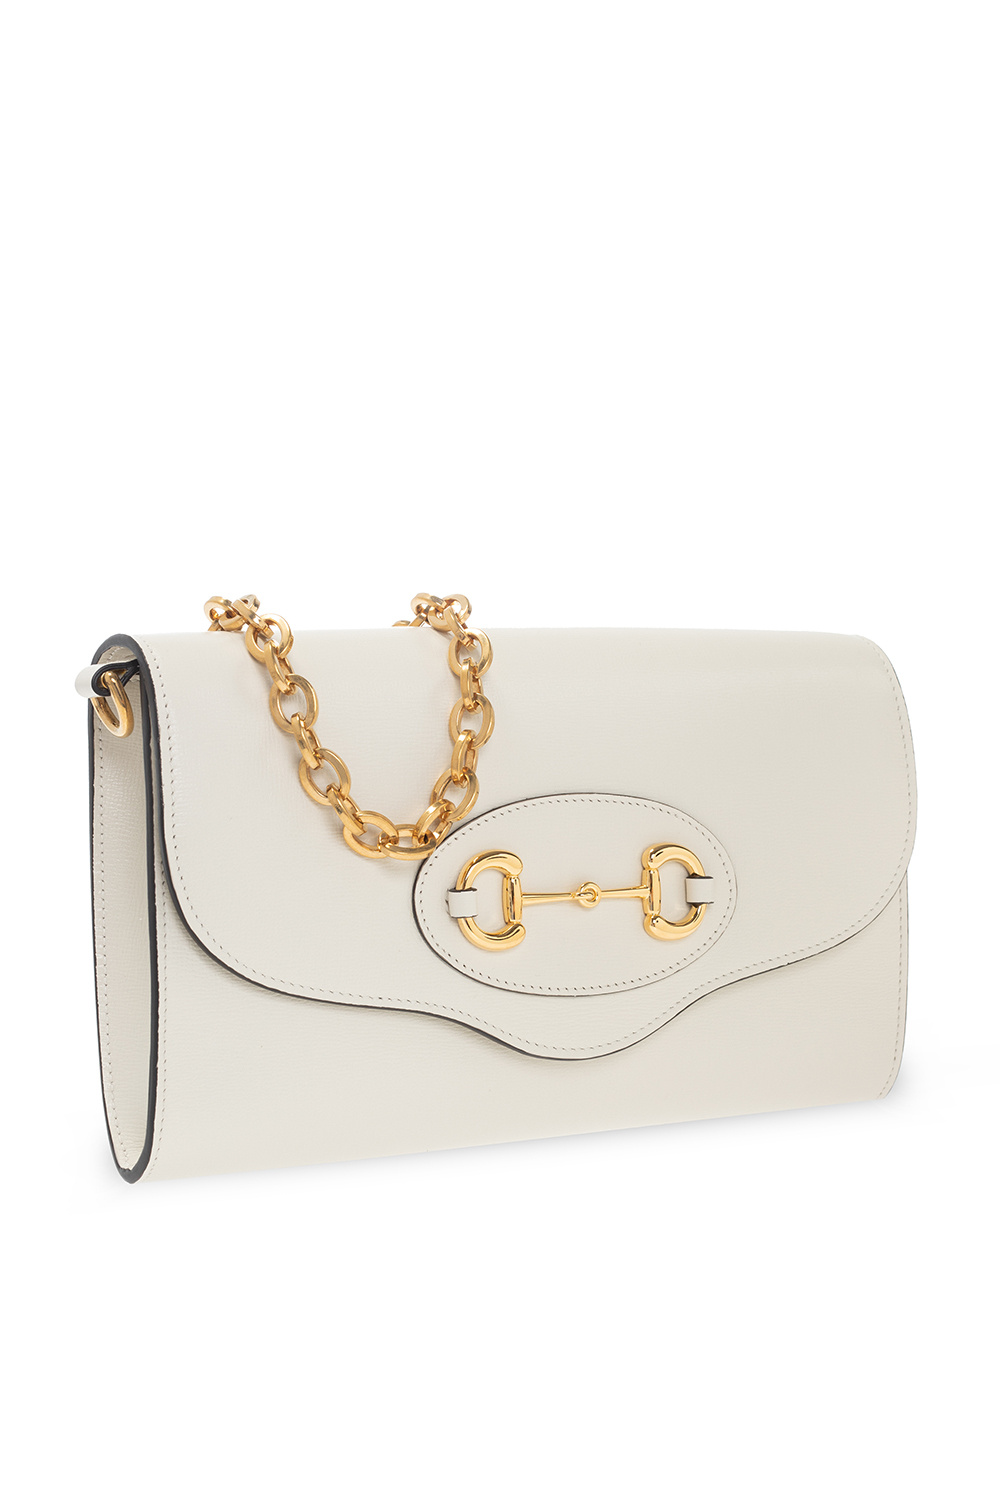 Gucci Horsebit 1955 White Calfskin and Gold Hardware Shoulder bag